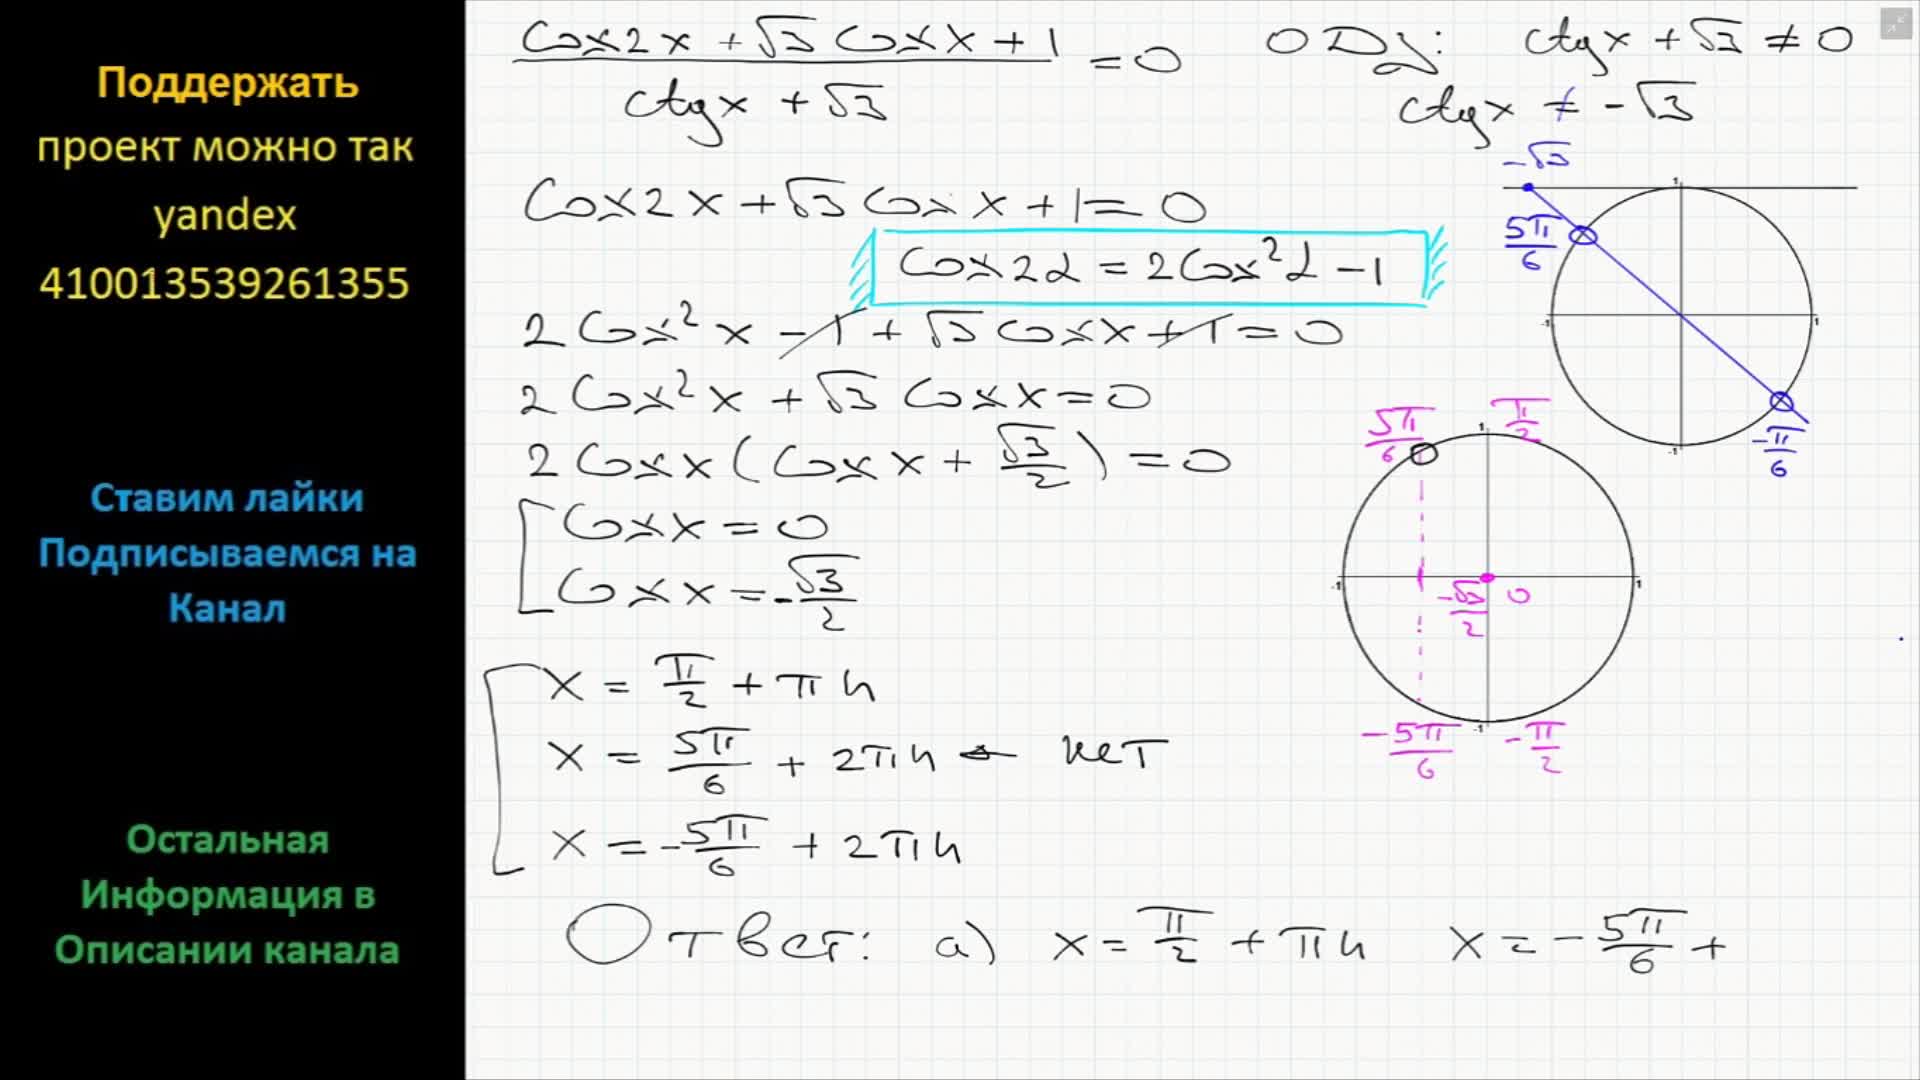 Корень 3 sin x cos x 1. Cosx 1 2 решение уравнения. Cosx корень из 3. CTG X корень из 3 /3 решение. CTG X < корень 2/2.